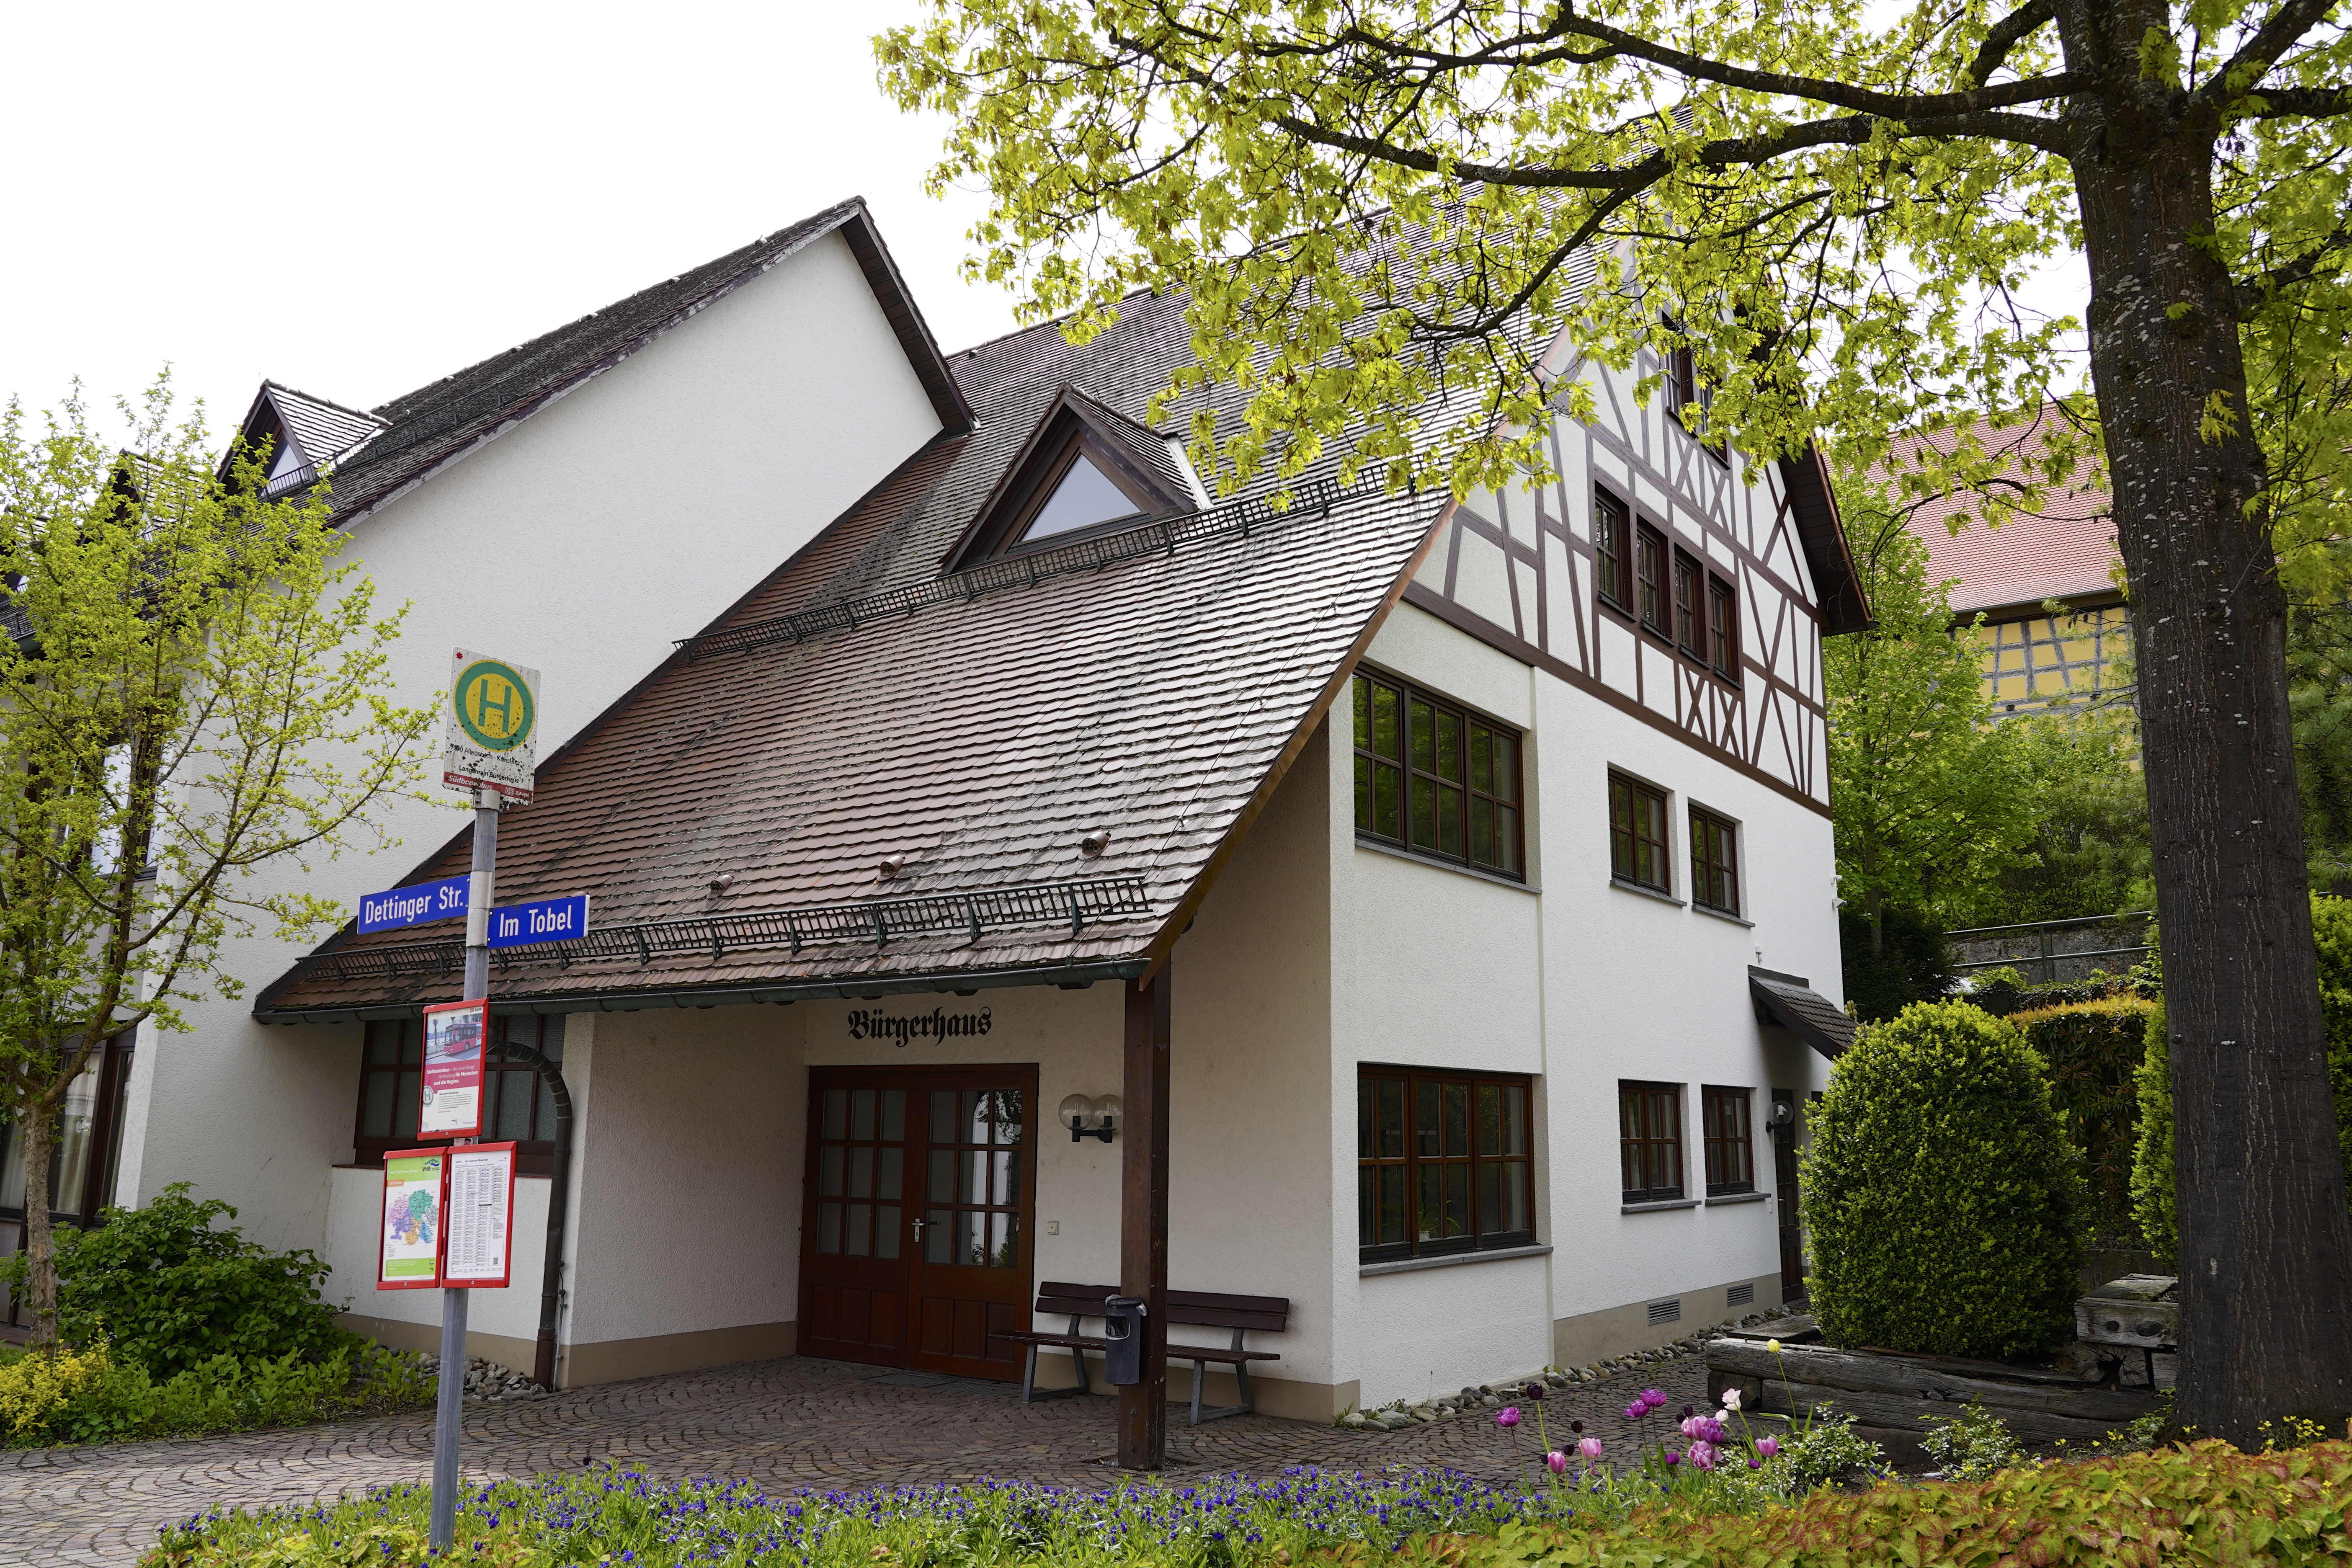  Bürgerhaus Langenrain - Foto: Gemeinde 